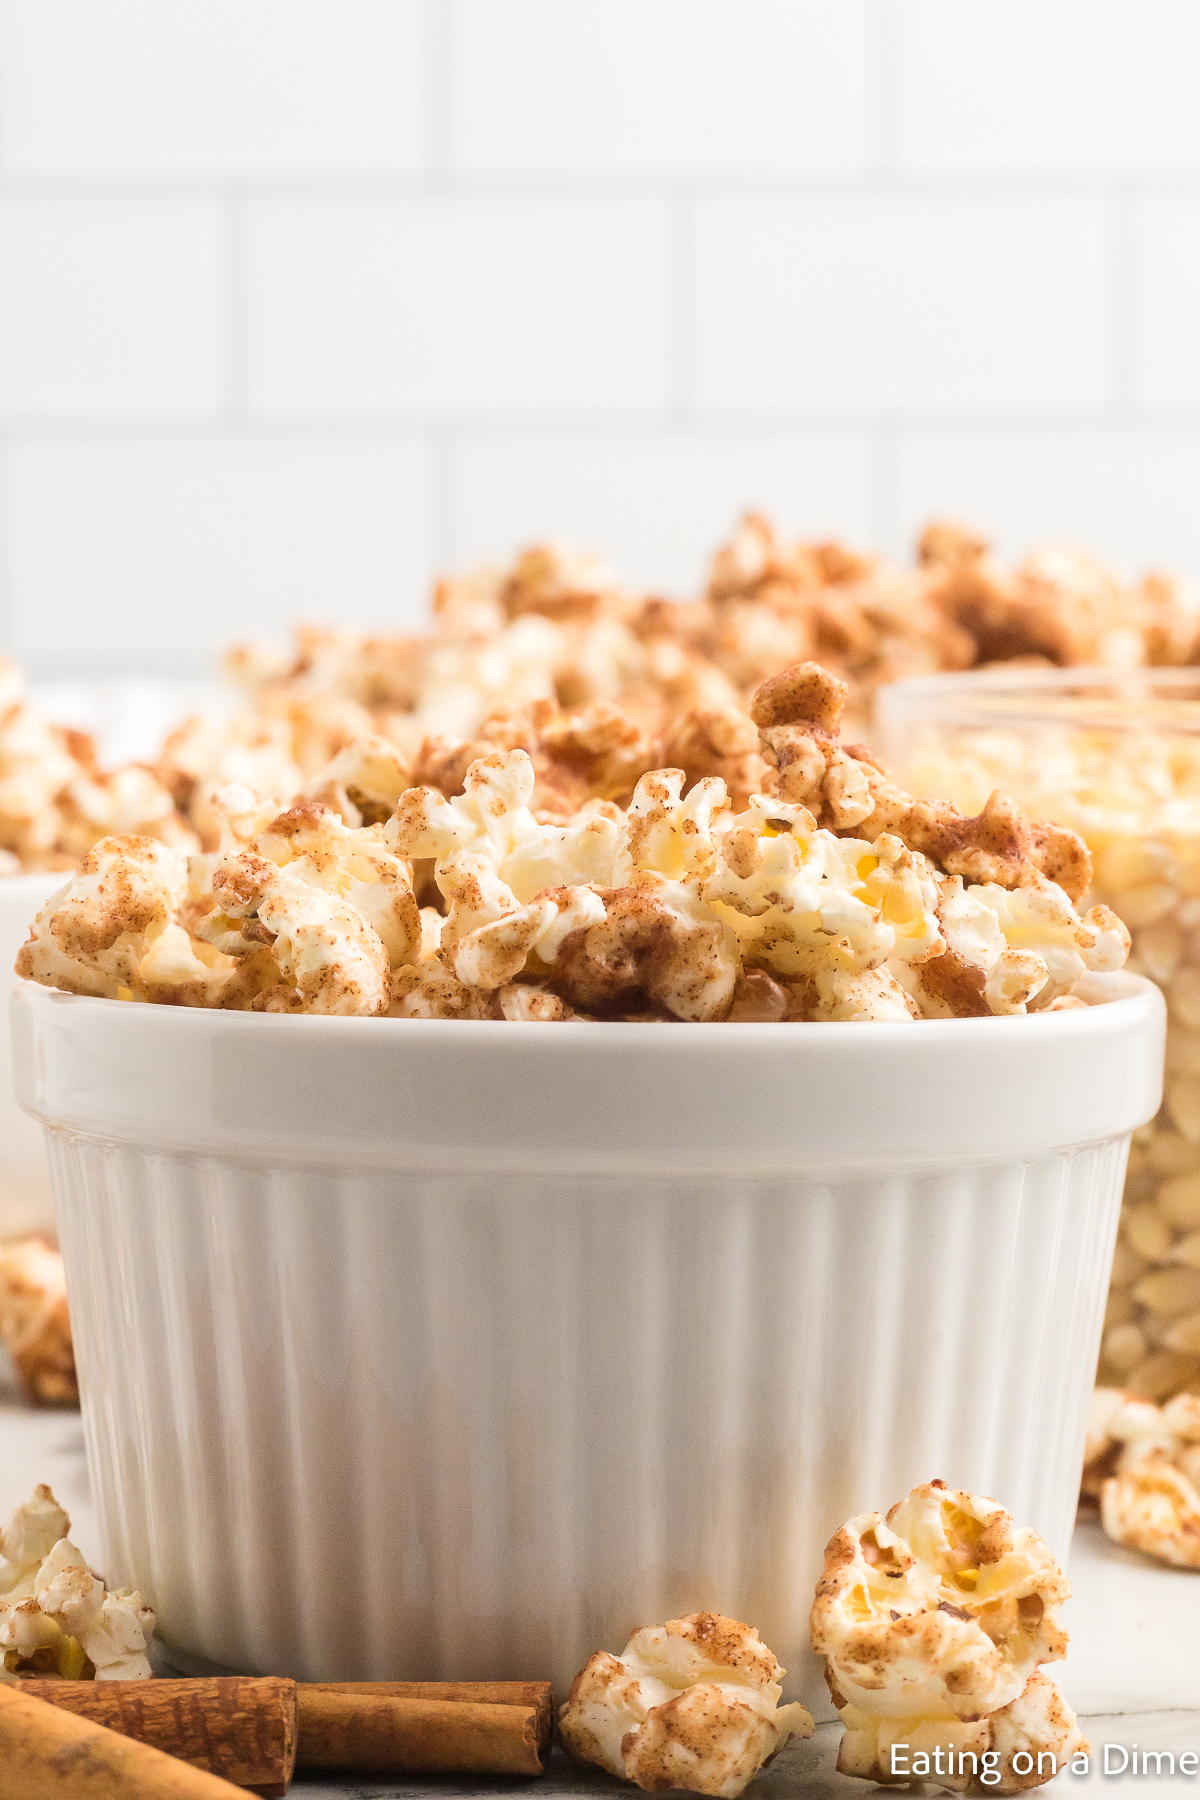 Cinnamon popcorn in a white bowl